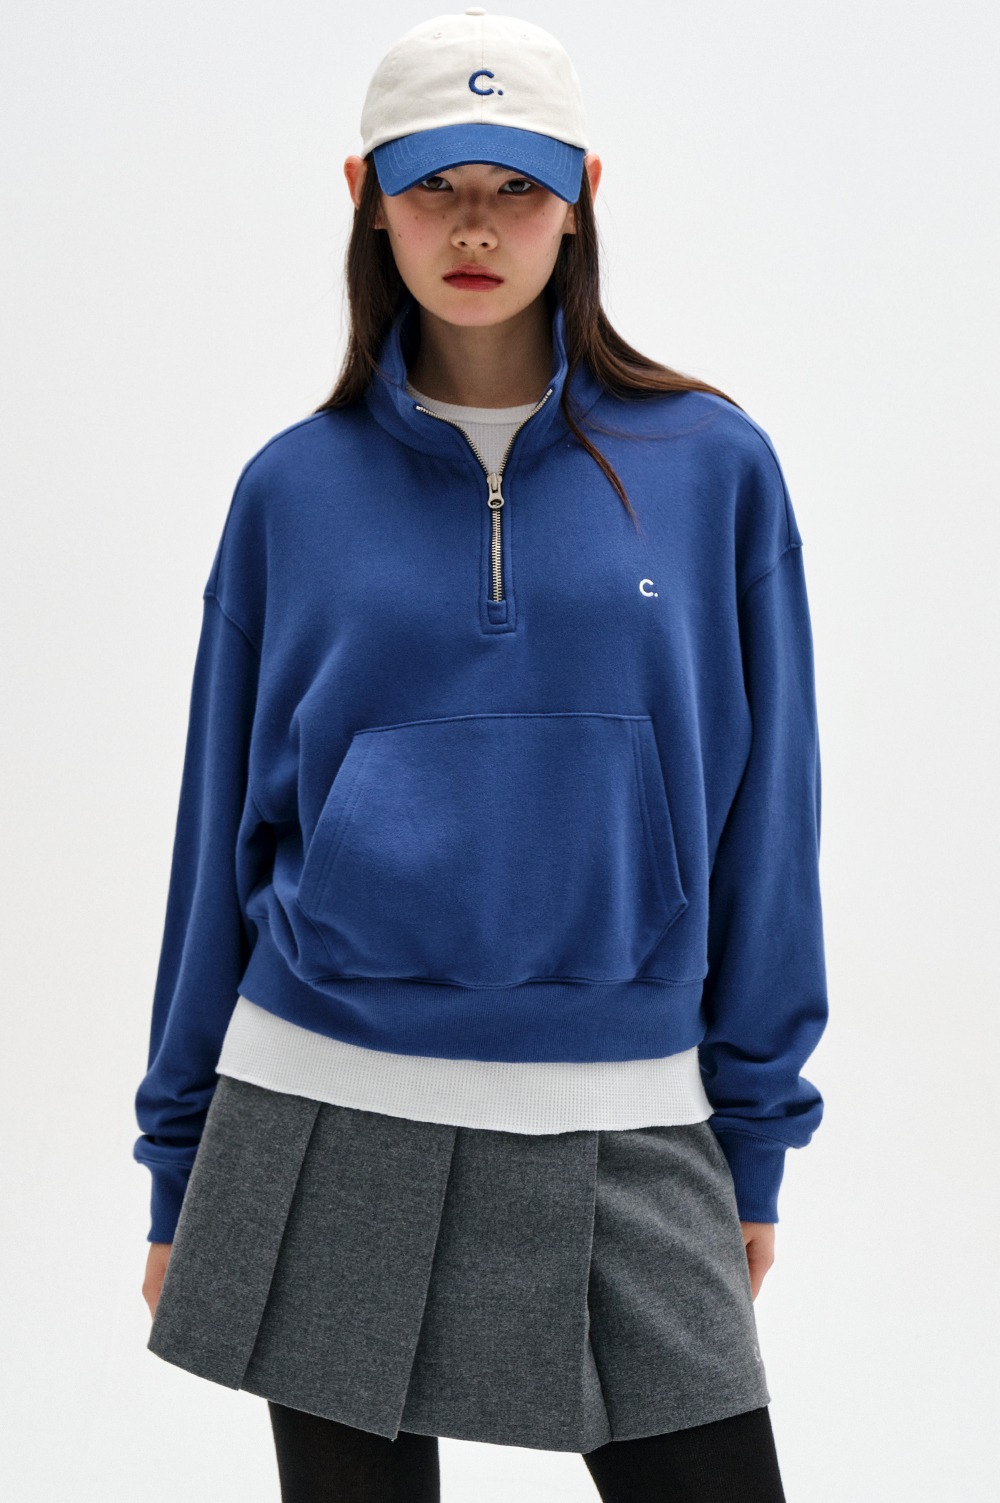 clove - [23FW clove] Comfy Half-zip Sweatshirt (Blue)